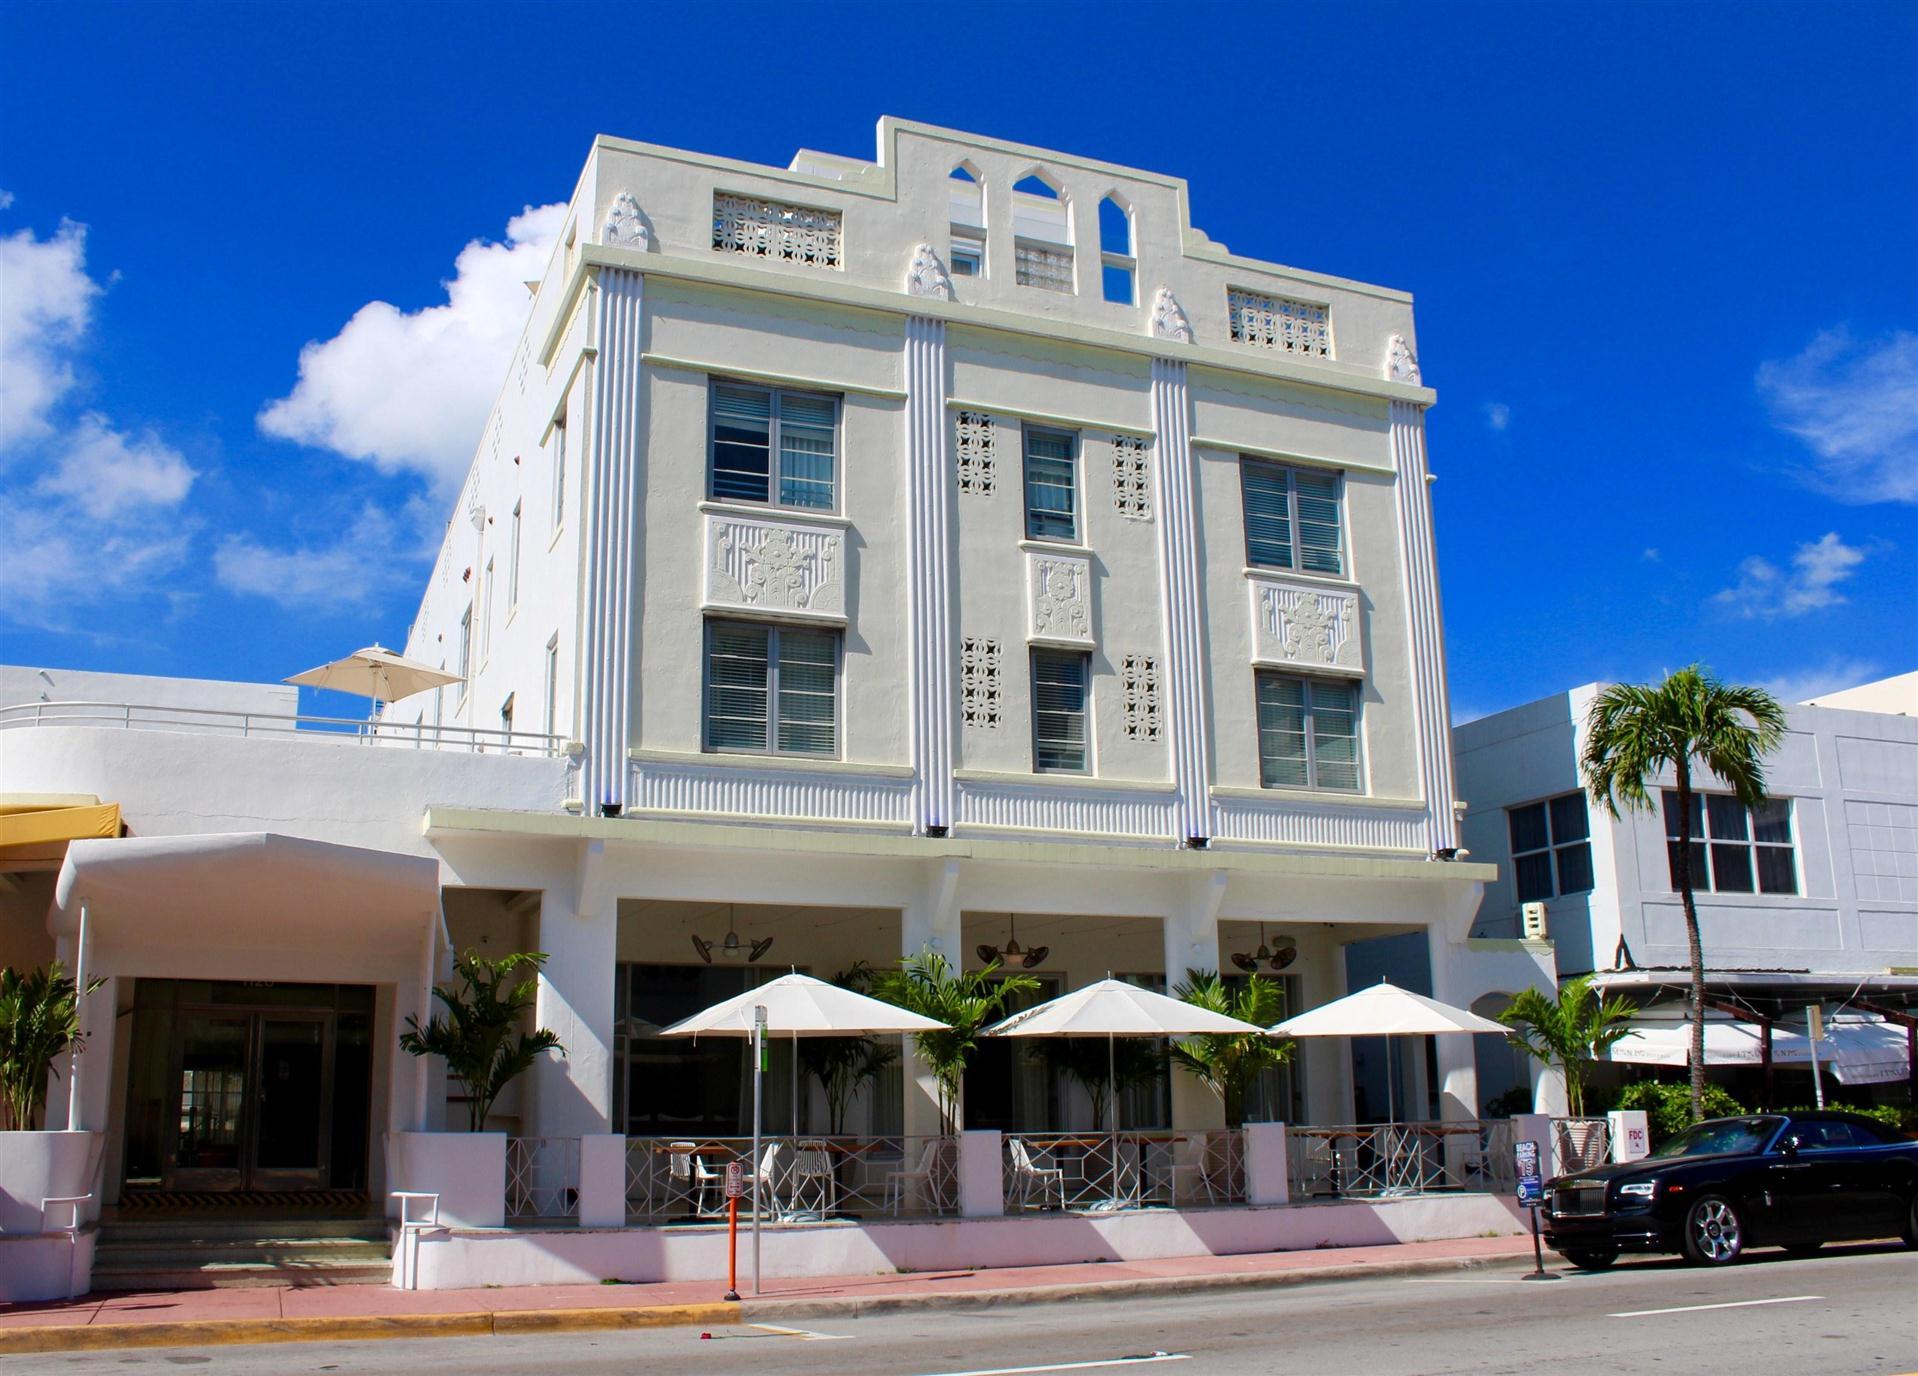 The Stiles Hotel, South Beach in Miami Beach, FL